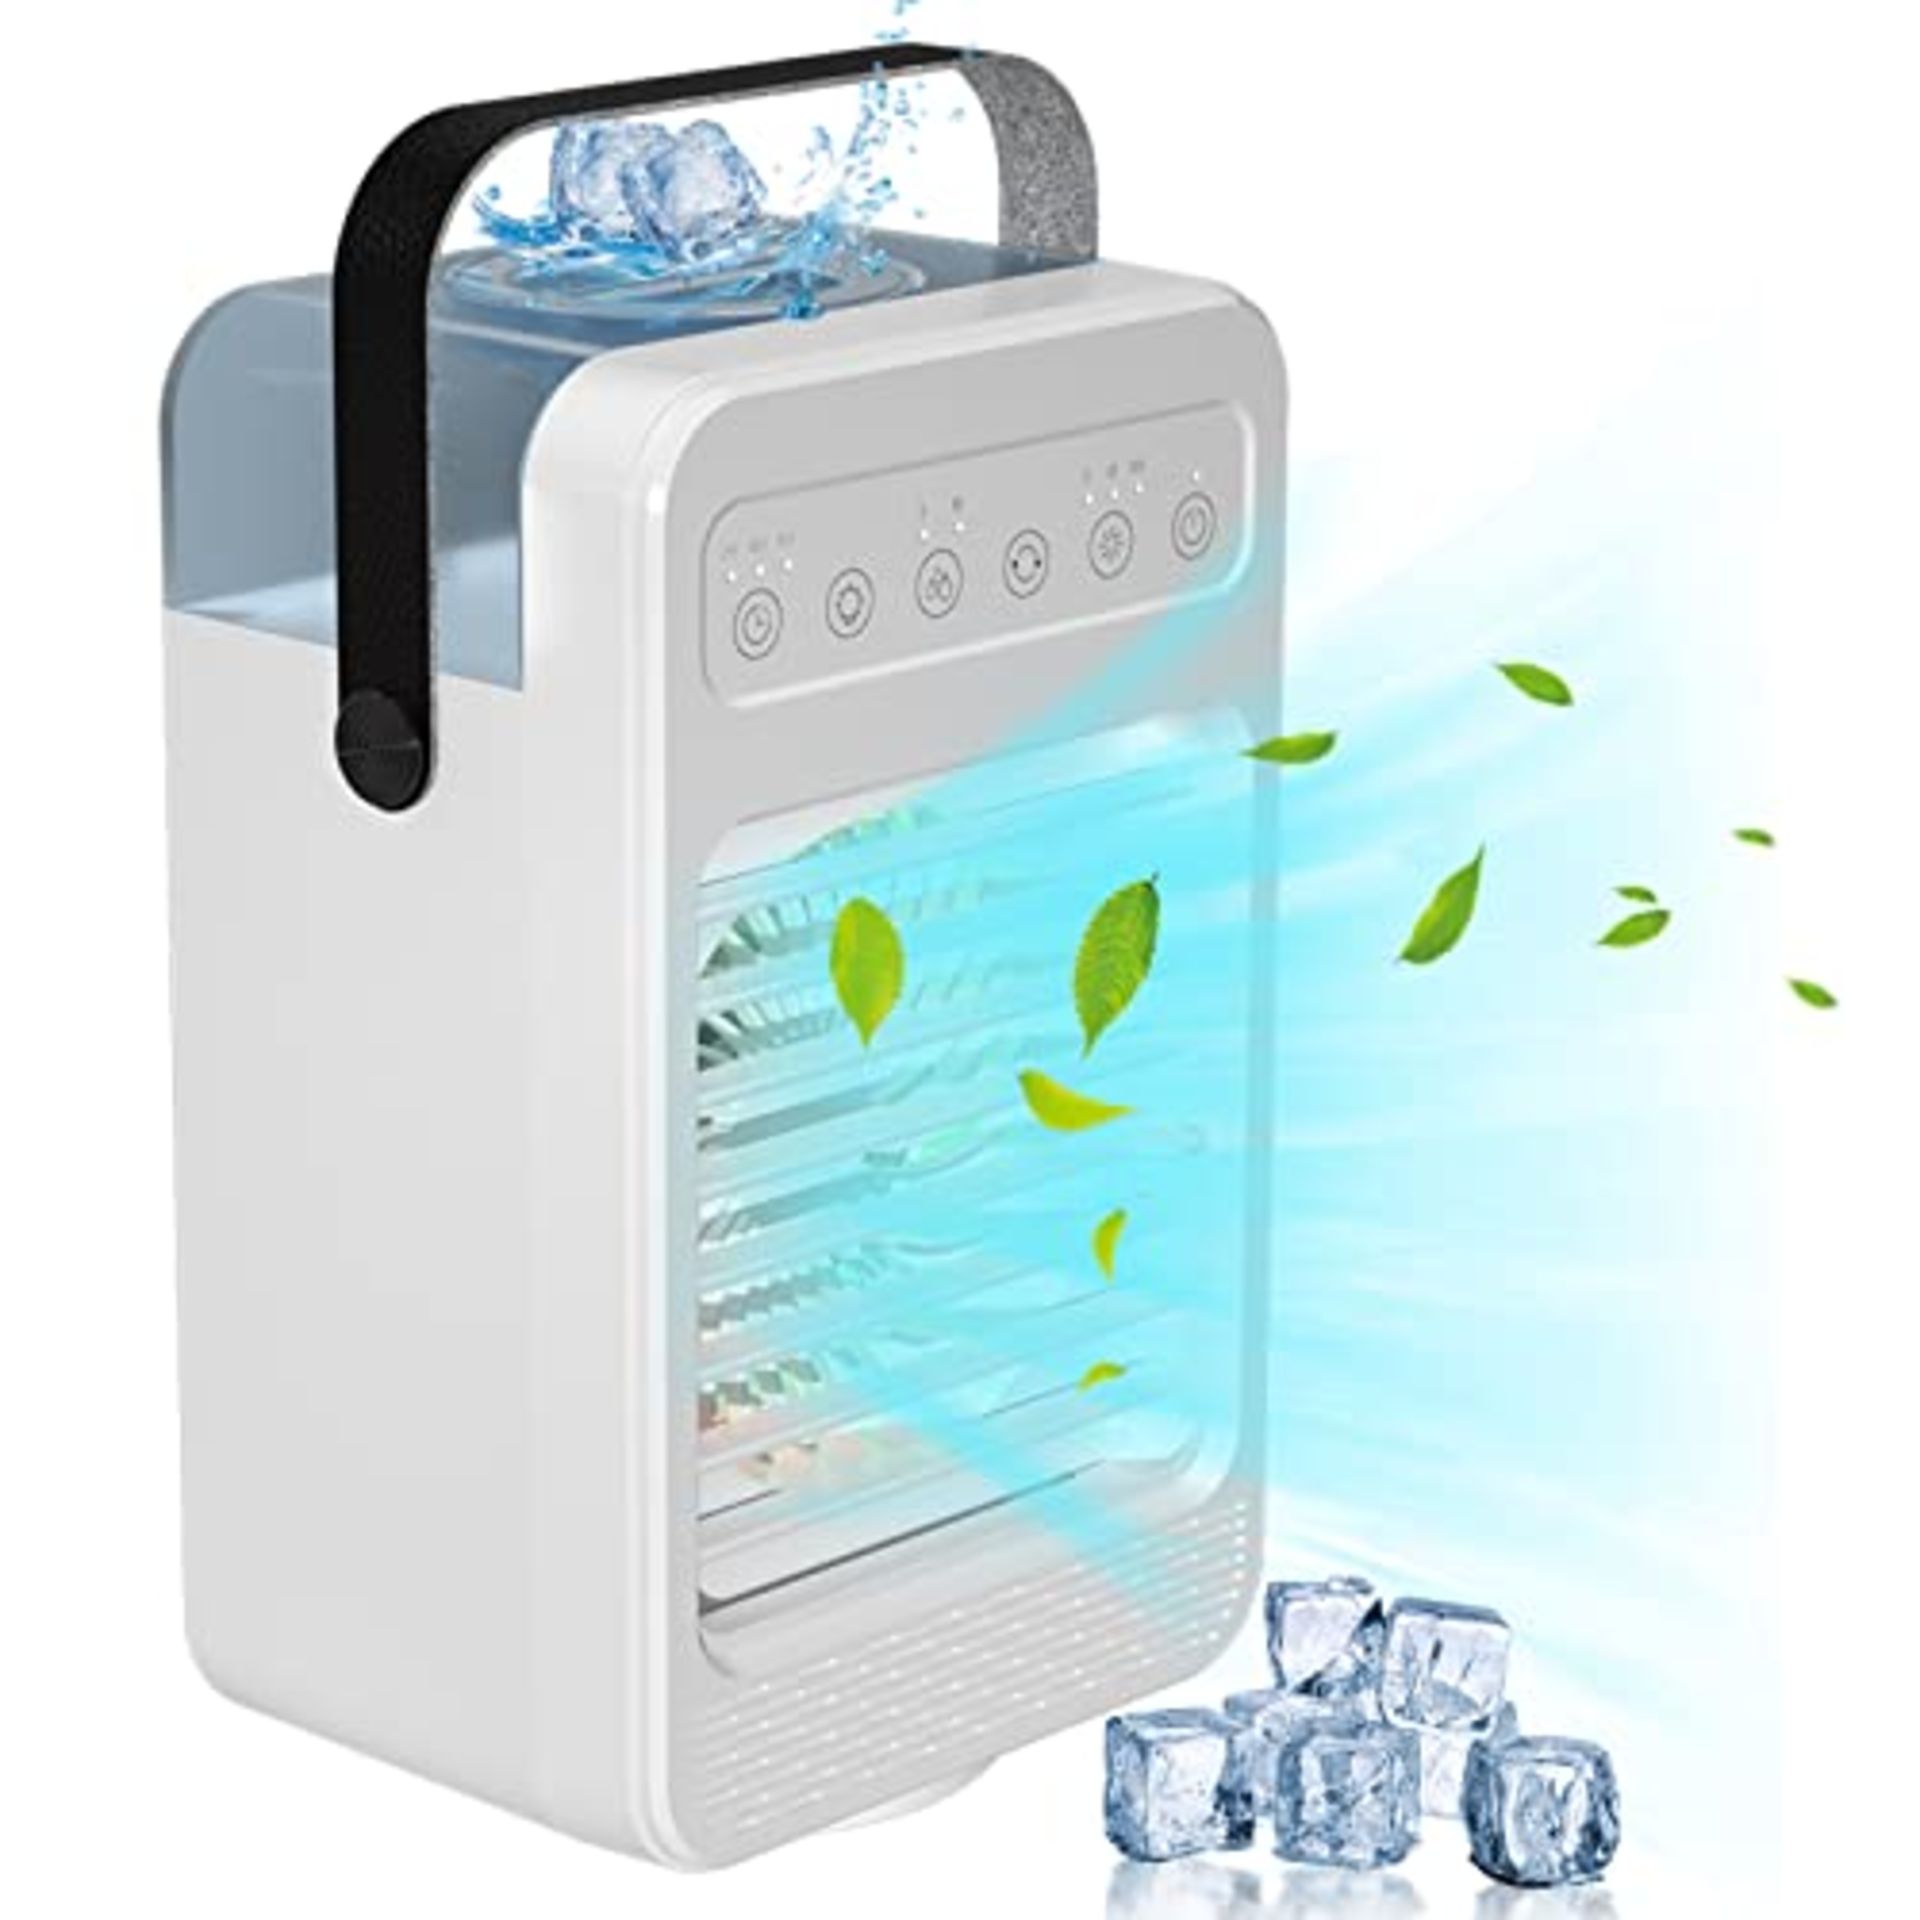 Portable Air Conditioner 600Ml Mini Mobile Air Conditioner Evaporative Air Cooler 70° Oscillat...